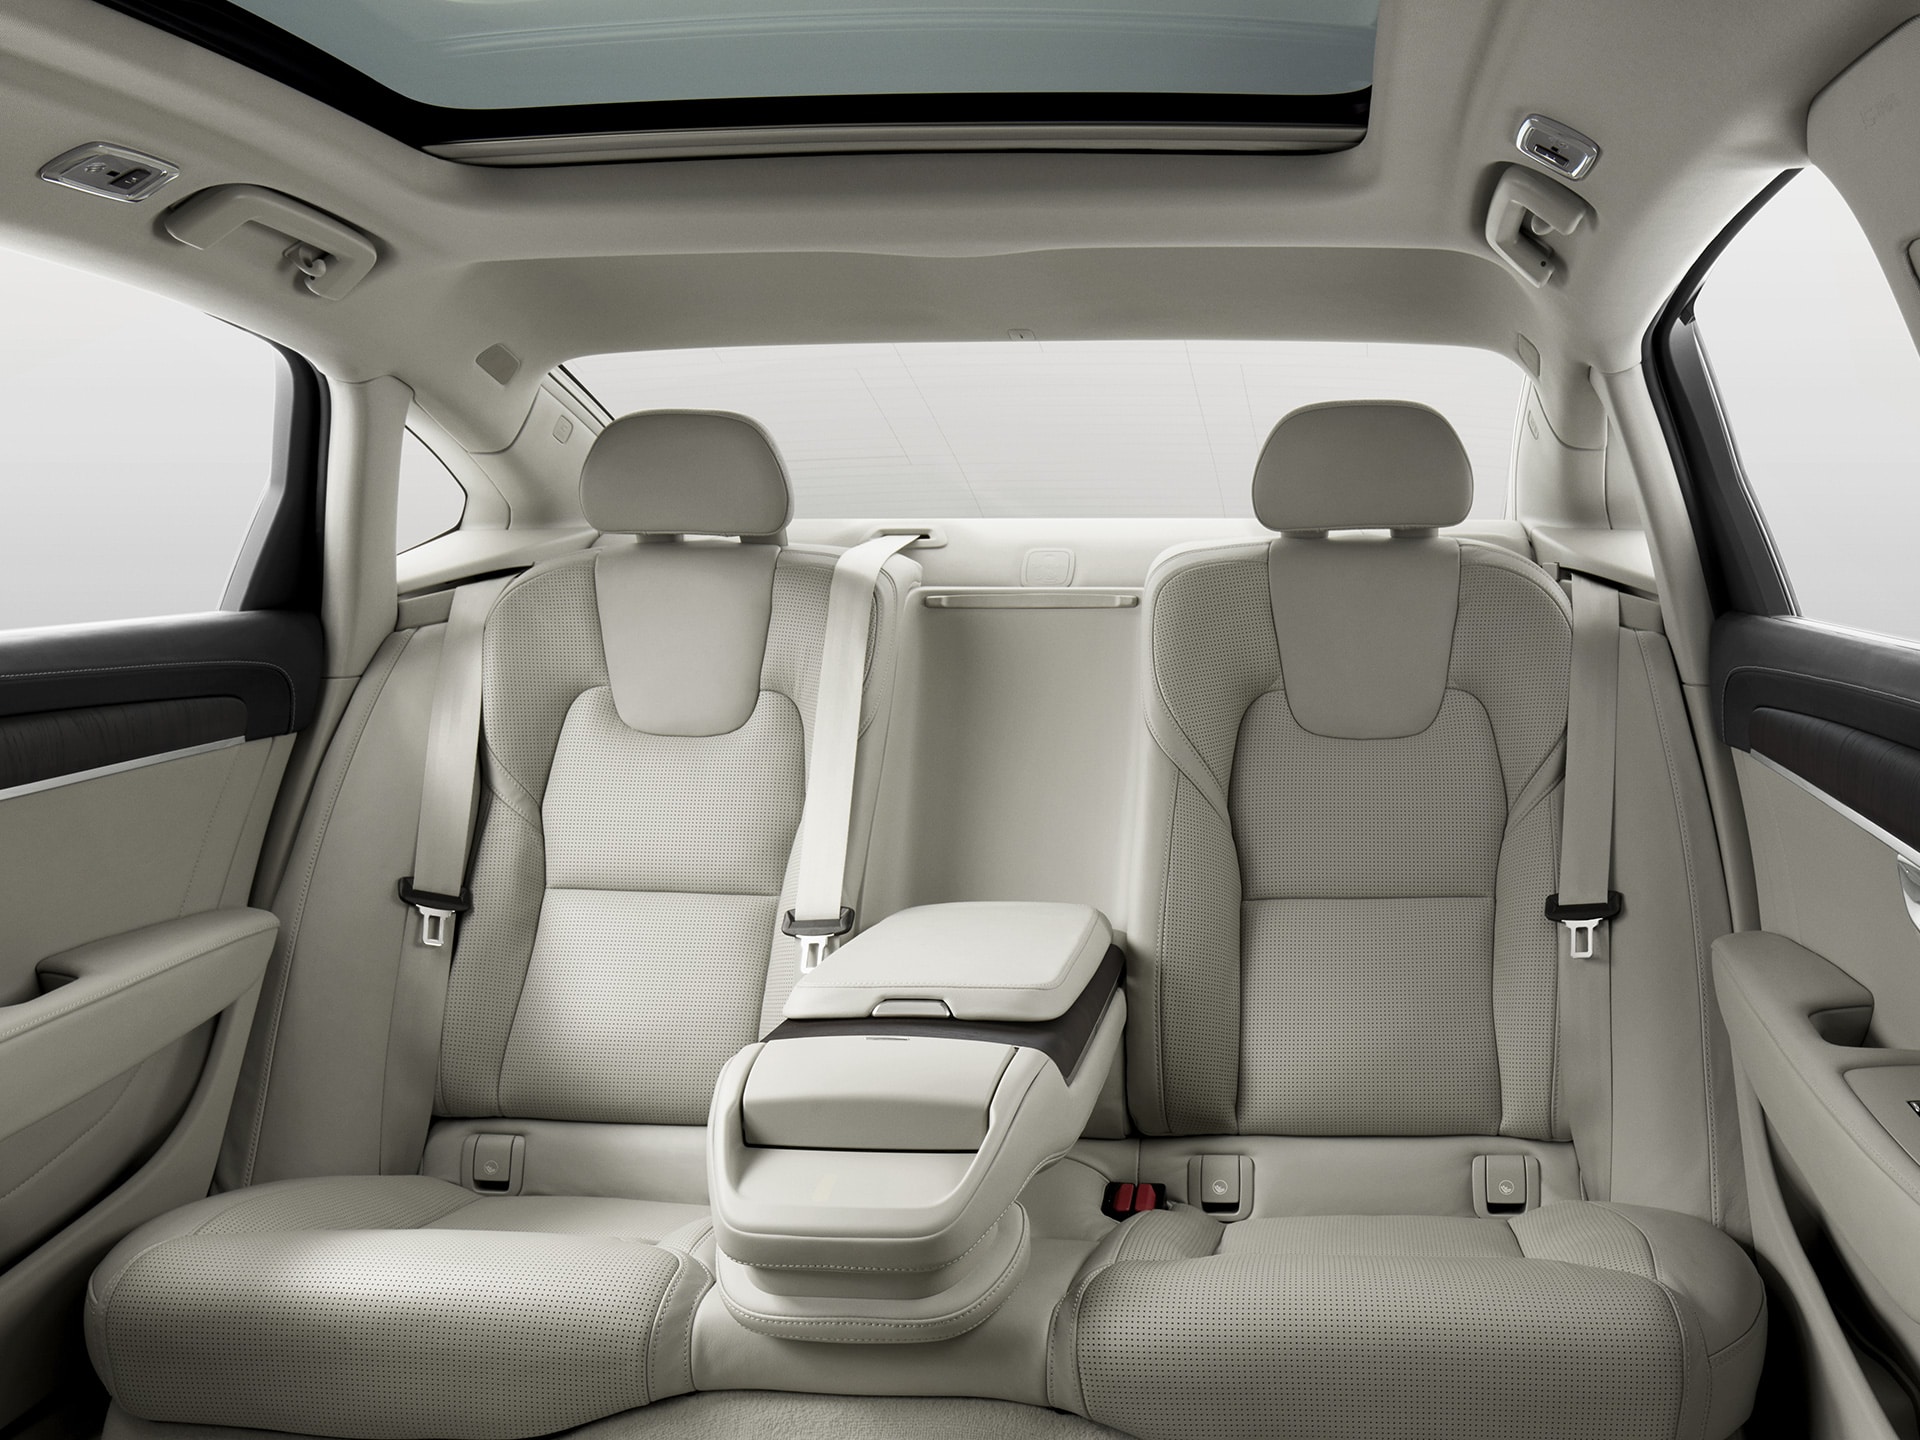 Asientos traseros con amplio espacio para las piernas y el exclusivo apoyabrazos central en el sedán S90.